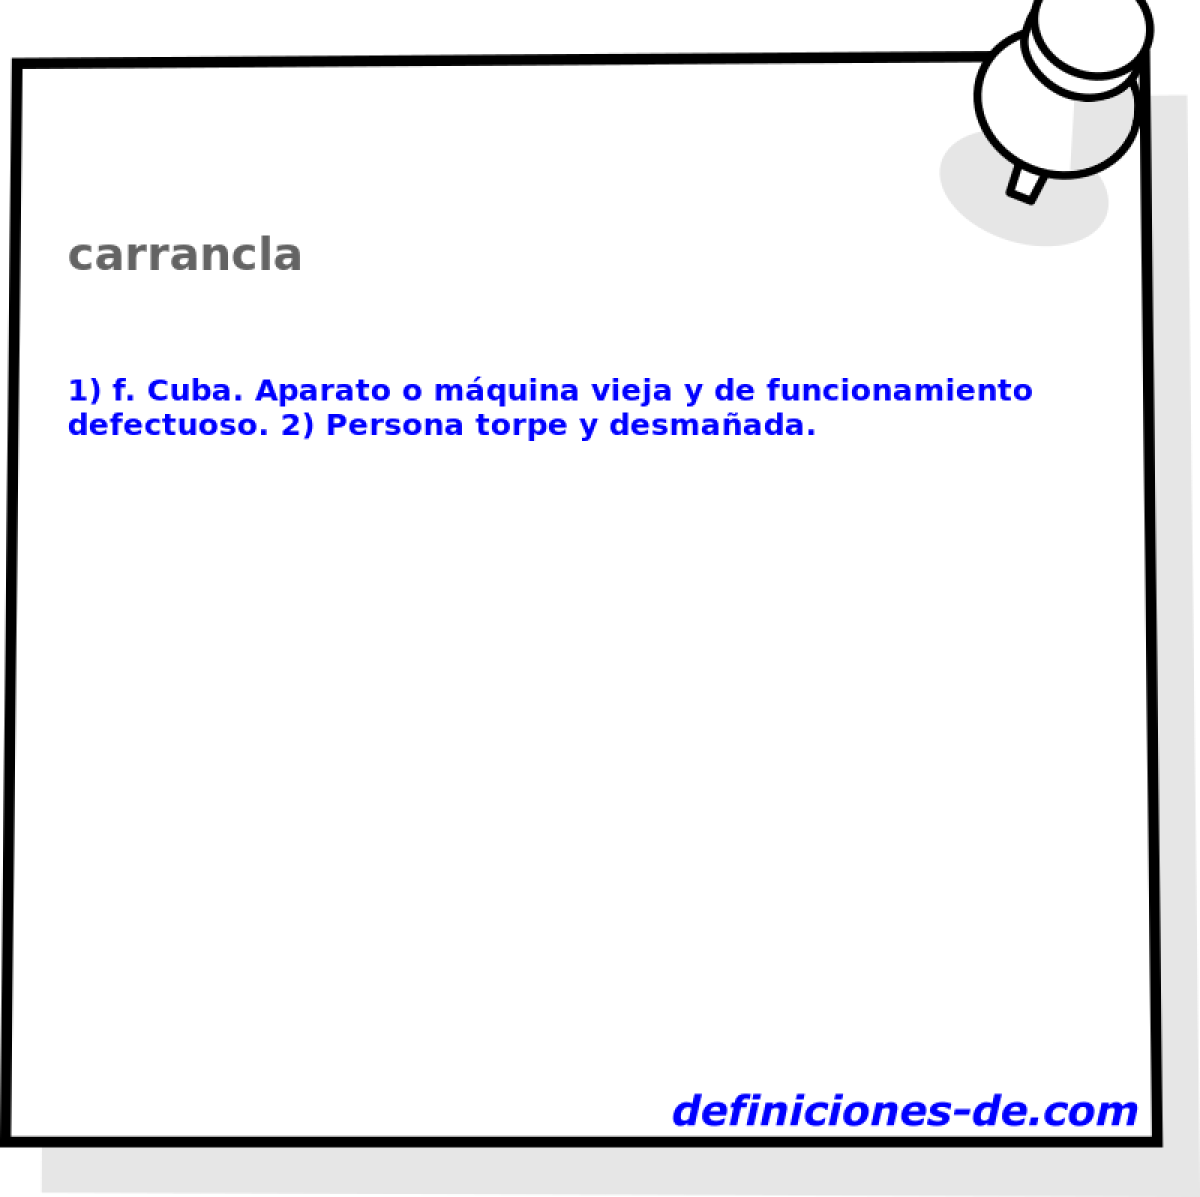 carrancla 